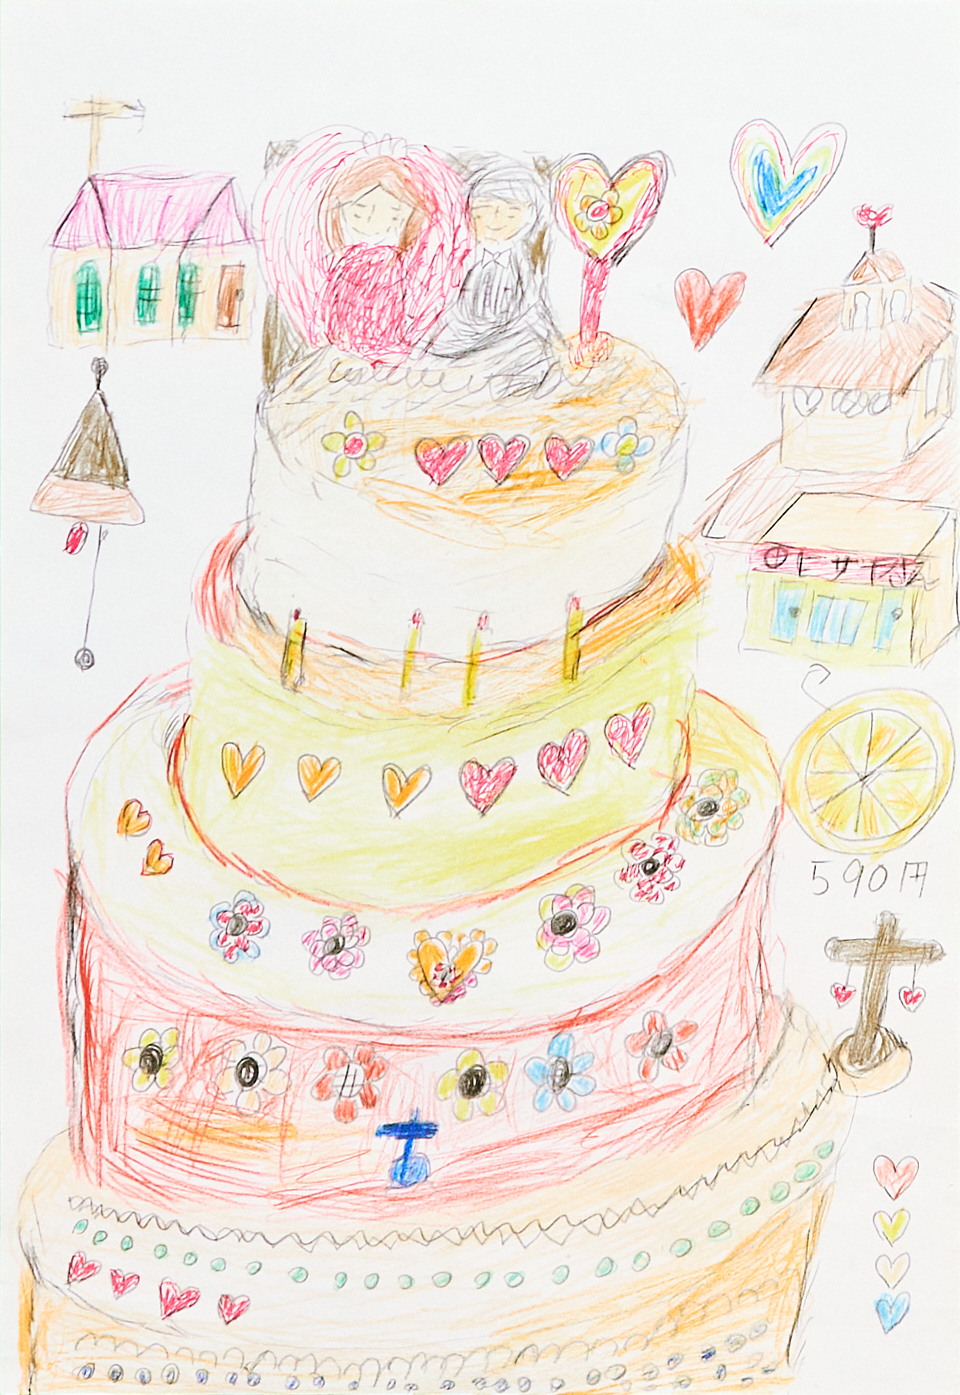 【絵】荒木さんが描いた絵。ハートや花が施されたウェディングケーキが中央に大きく描かれ、周囲には教会や鐘なども配されている。